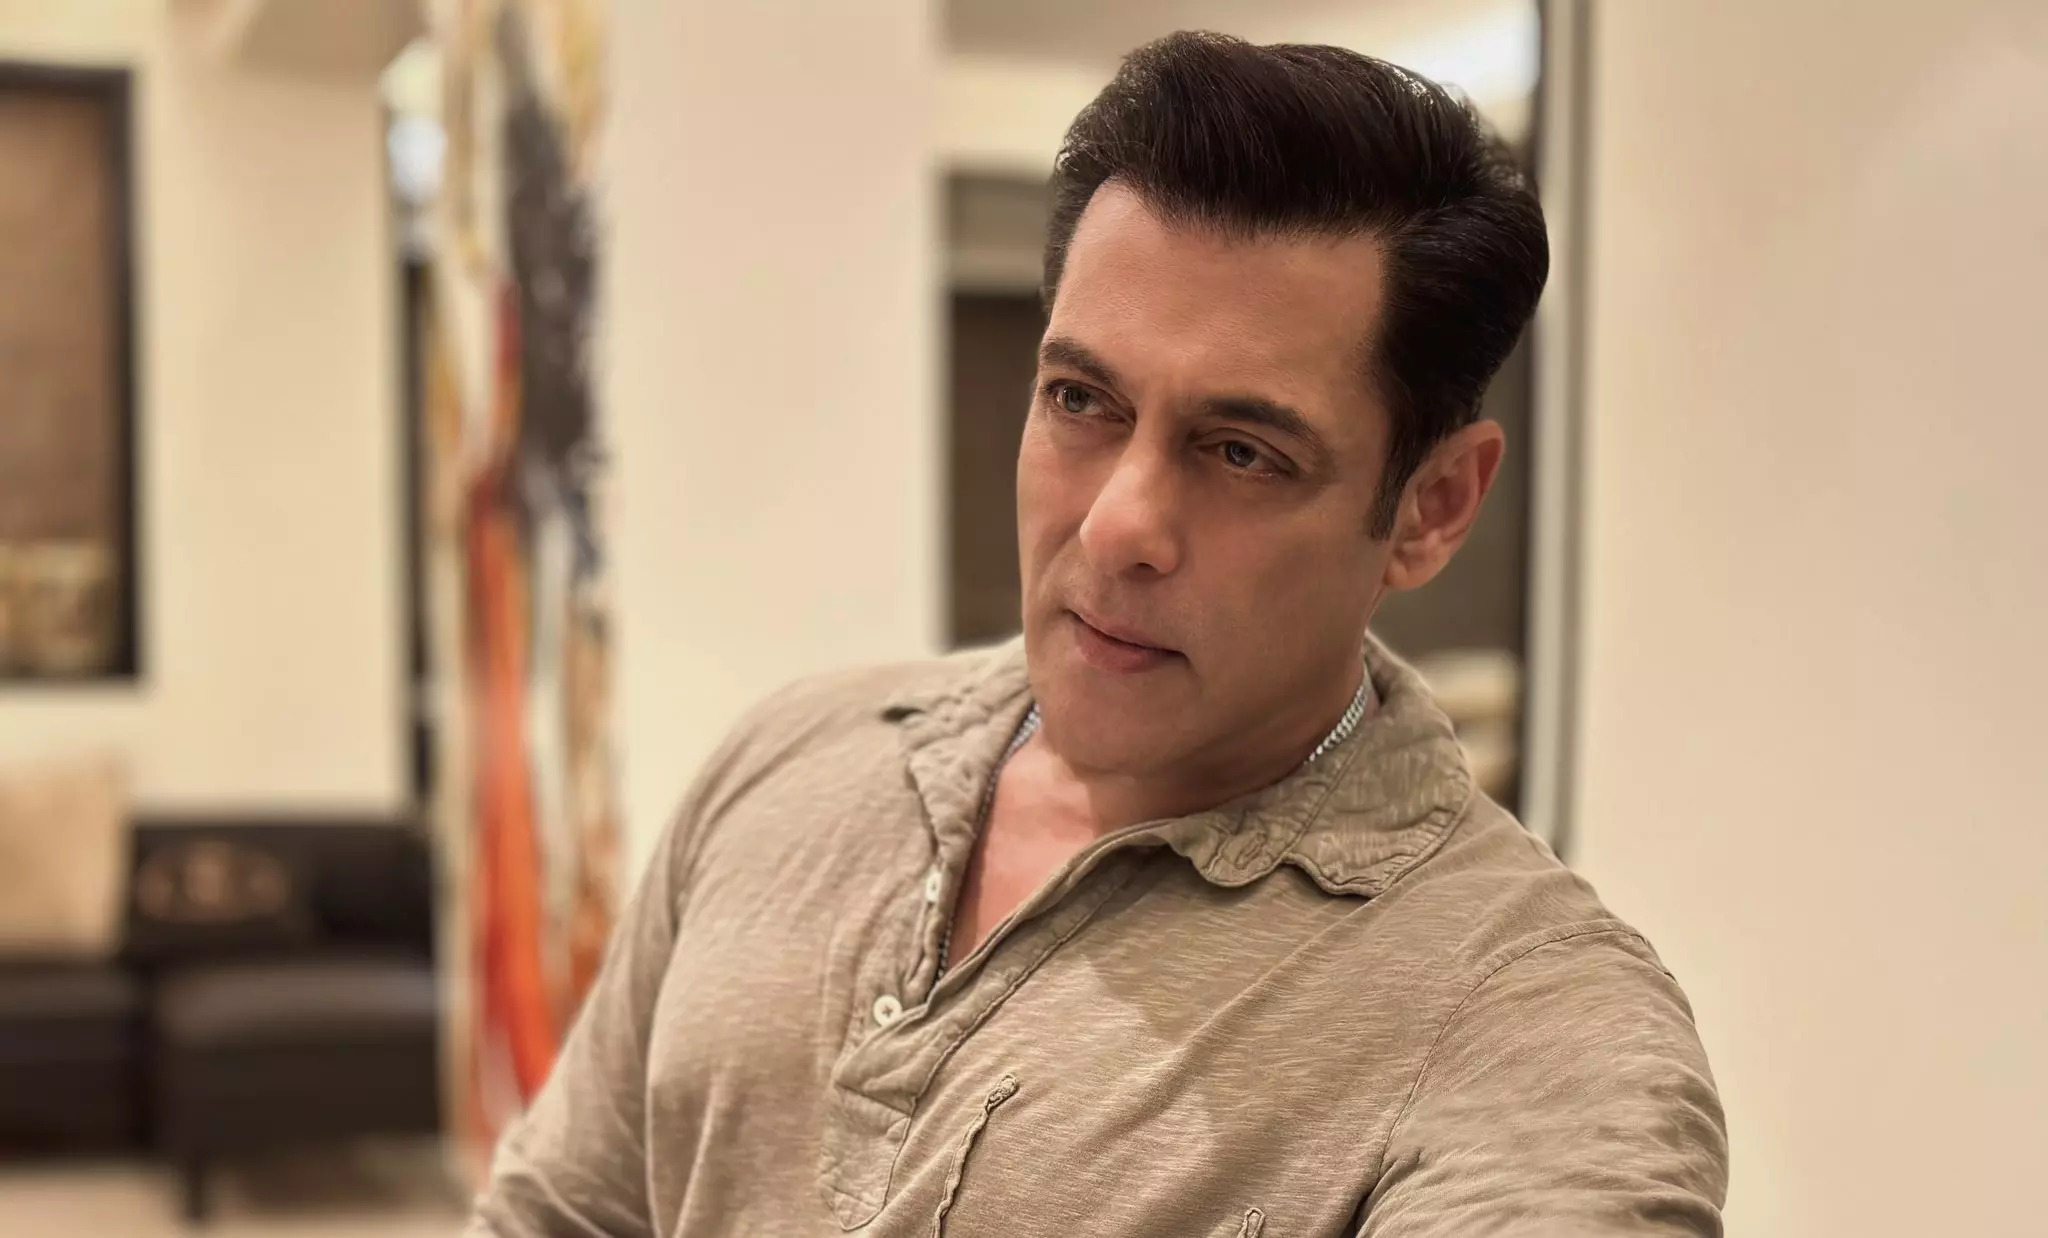 Salman Khan firing case: Accused dies in hospital after suicide bid in lock-up